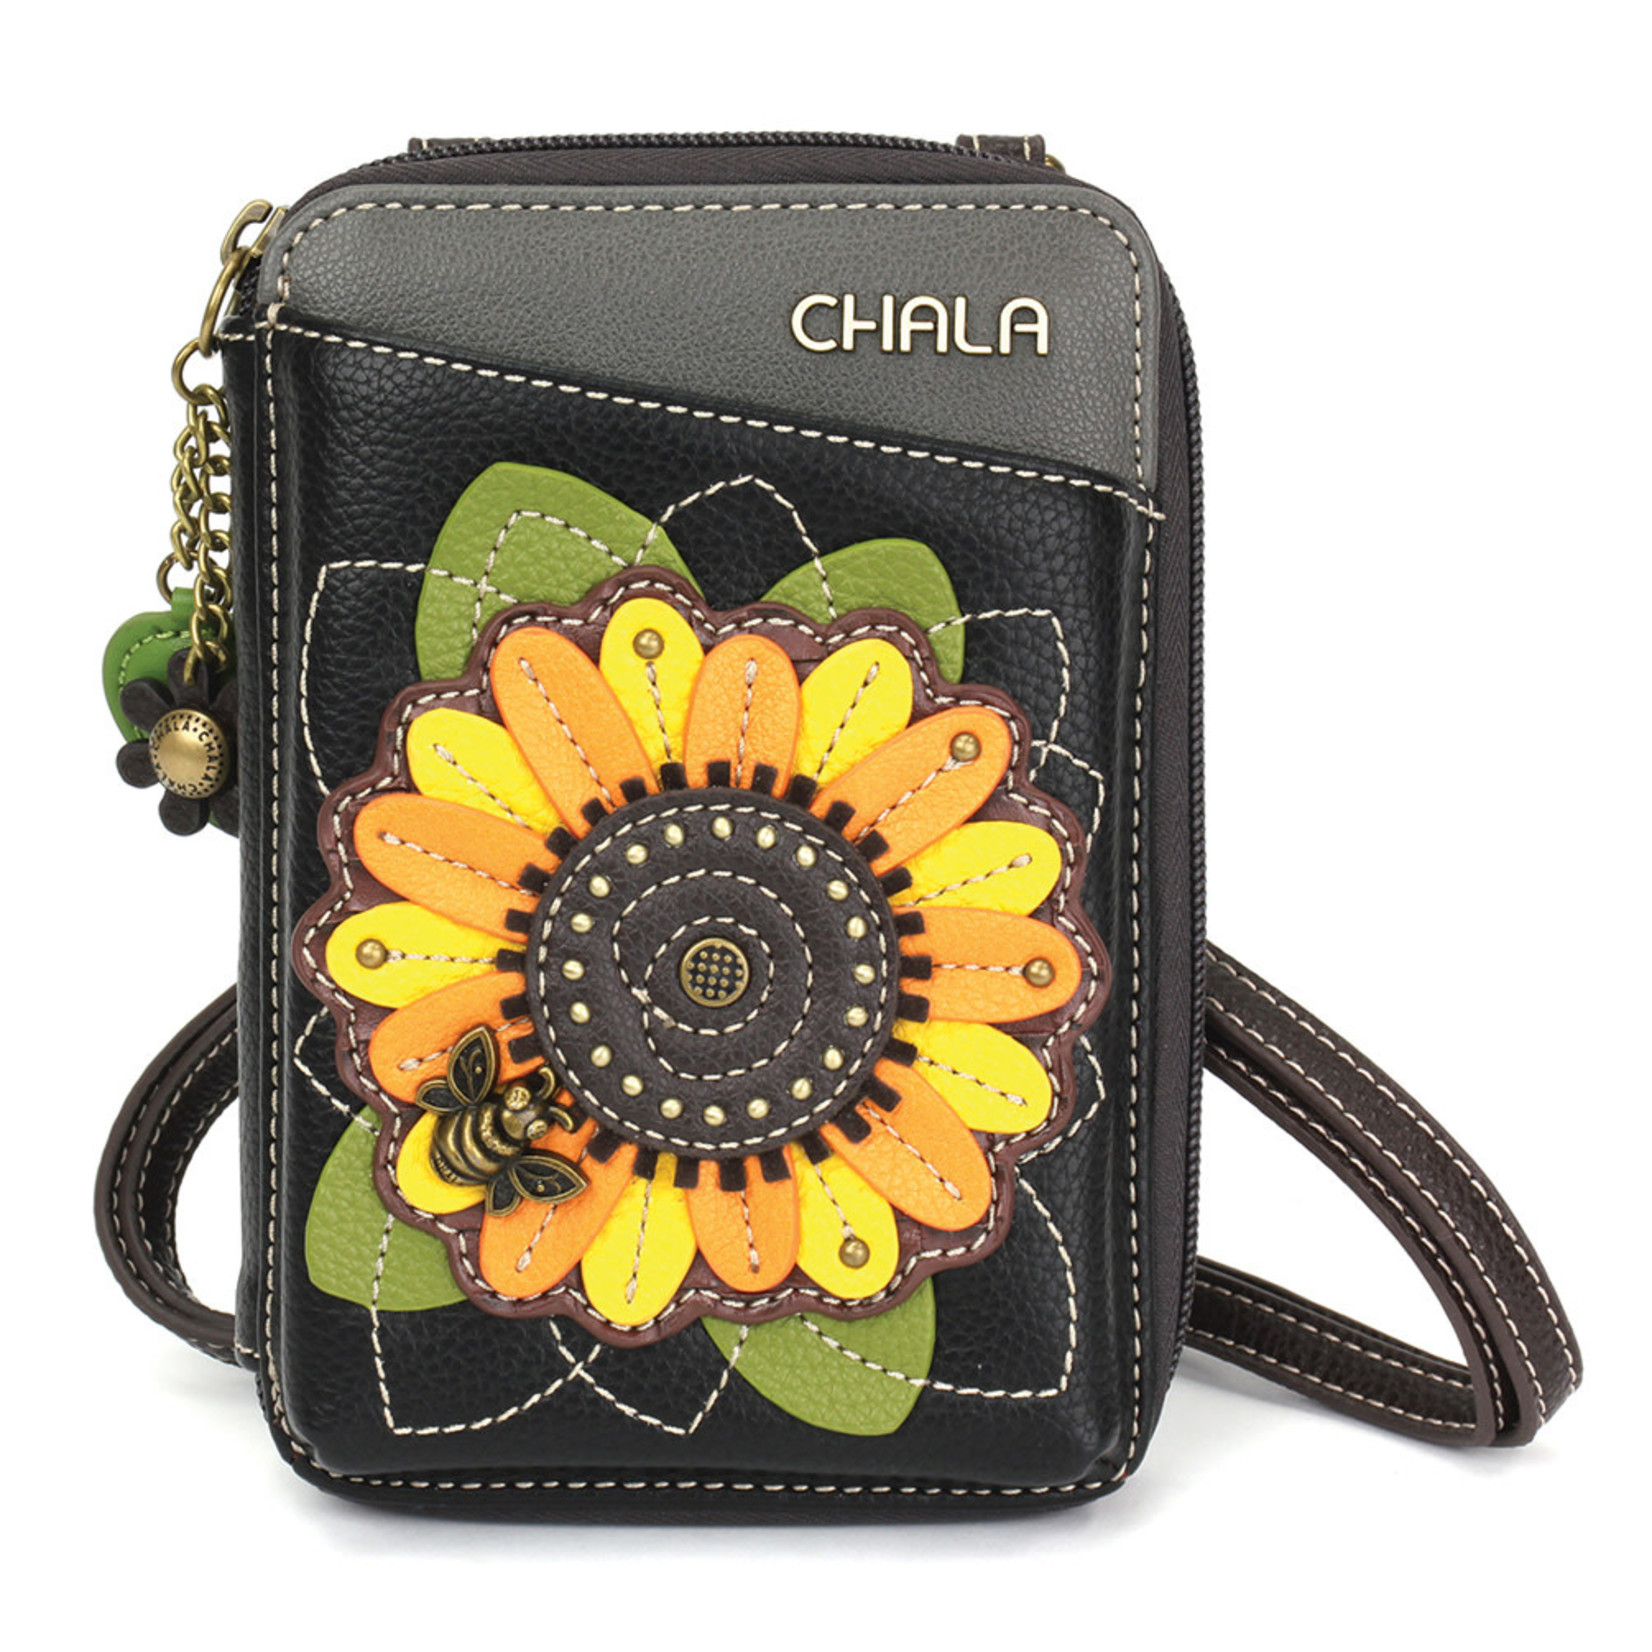 Chala Wallet Crossbody - Sunflower